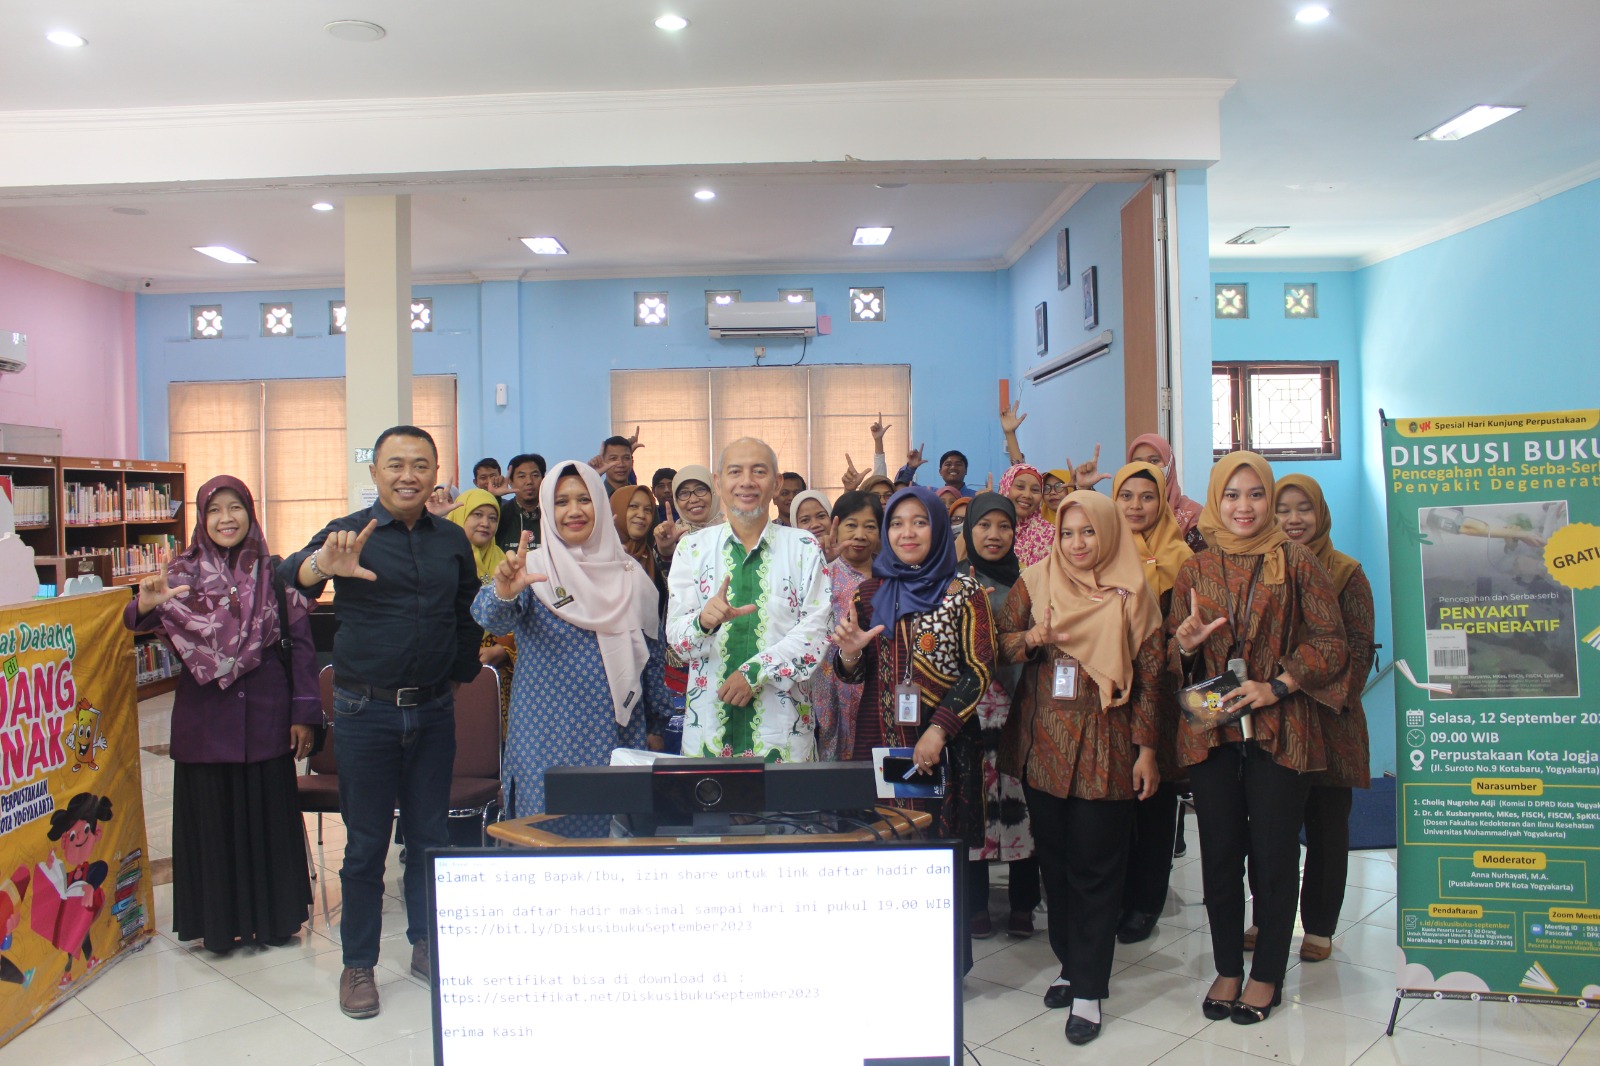 Tingkatkan Literasi Kesehatan Masyarakat, DPK Kota Yogyakarta Selenggarakan Diskusi Buku